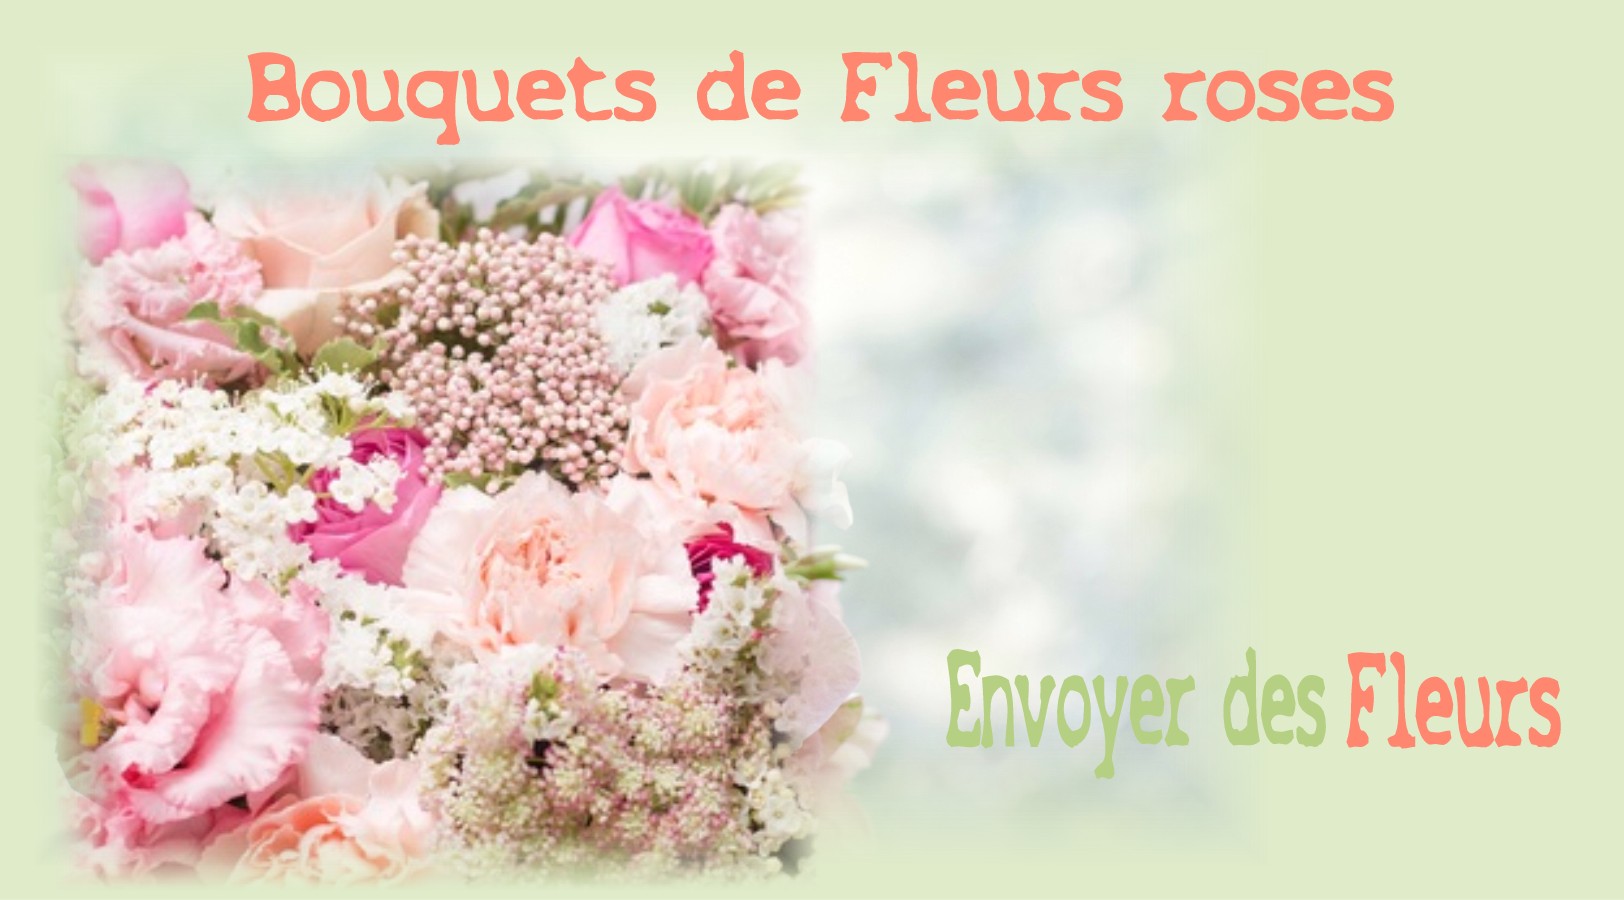 BOUQUETS DE FLEURS ROSES - FLEURISTE BORDEAUX (33) - ENVOYER DES FLEURS